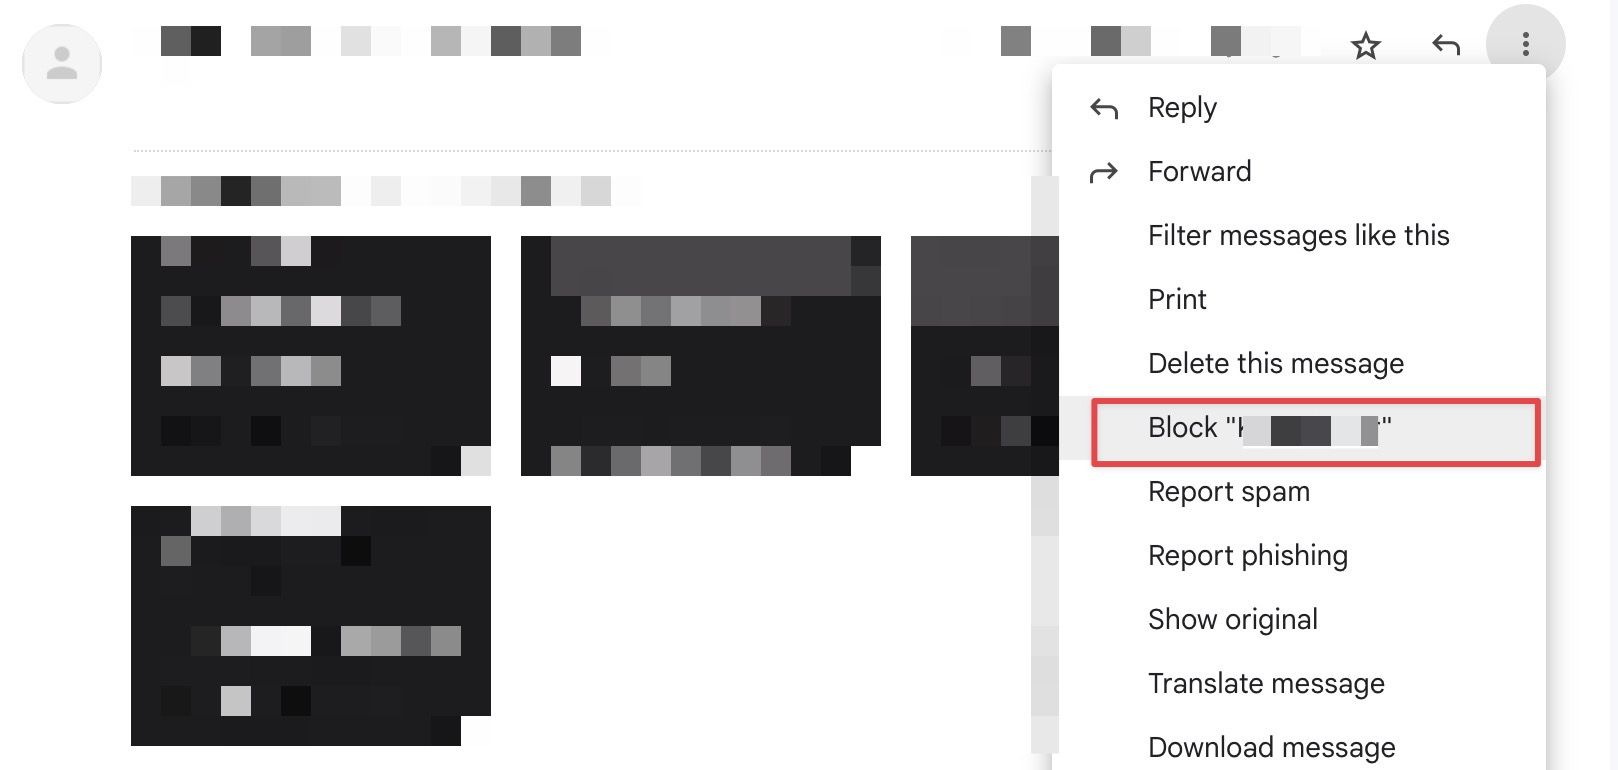 Bloqueie remetentes irritantes no Gmail